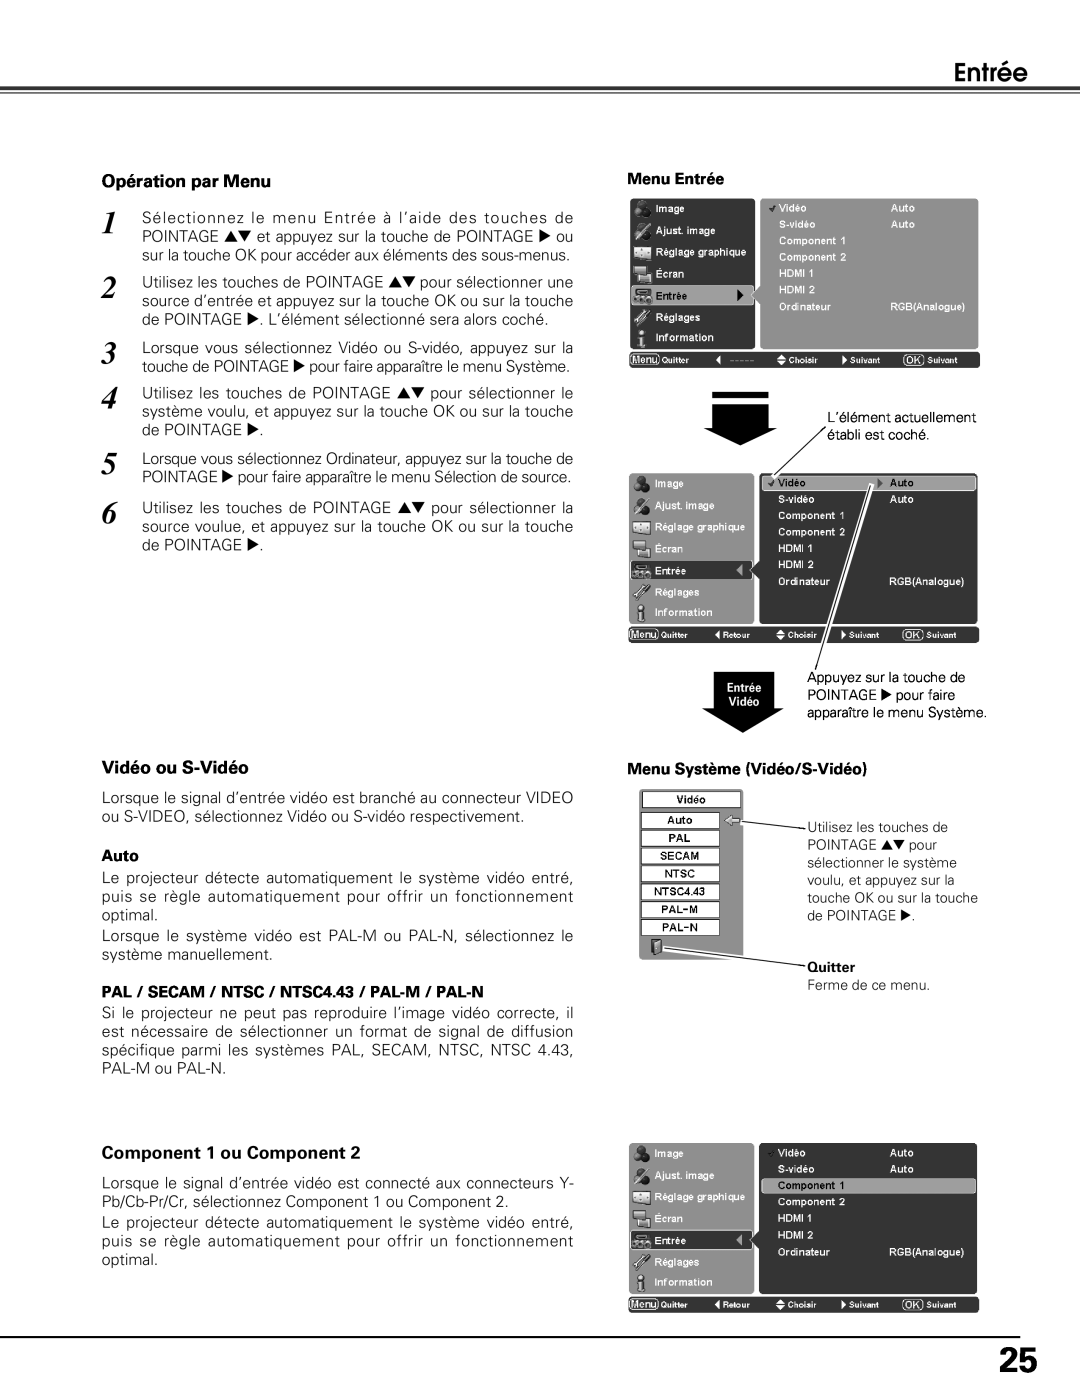 Sanyo PLV-Z5BK manual Entrée, Opération par Menu, Vidéo ou S-Vidéo, Component 1 ou Component 